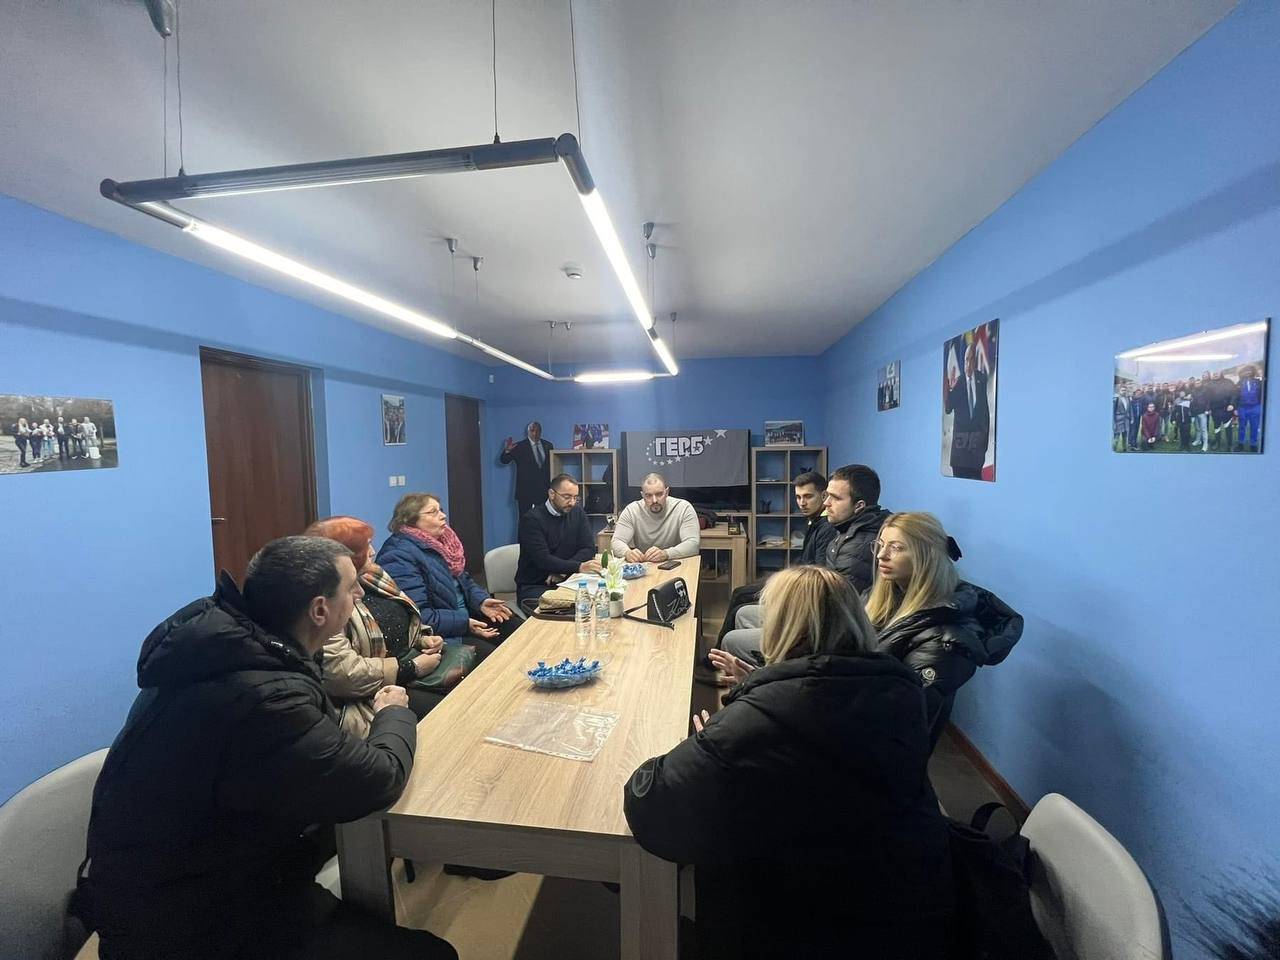 По време на събранието бяха отчетени десетки проведени срещи, мероприятия и открити приемни за граждани в София през последния месец